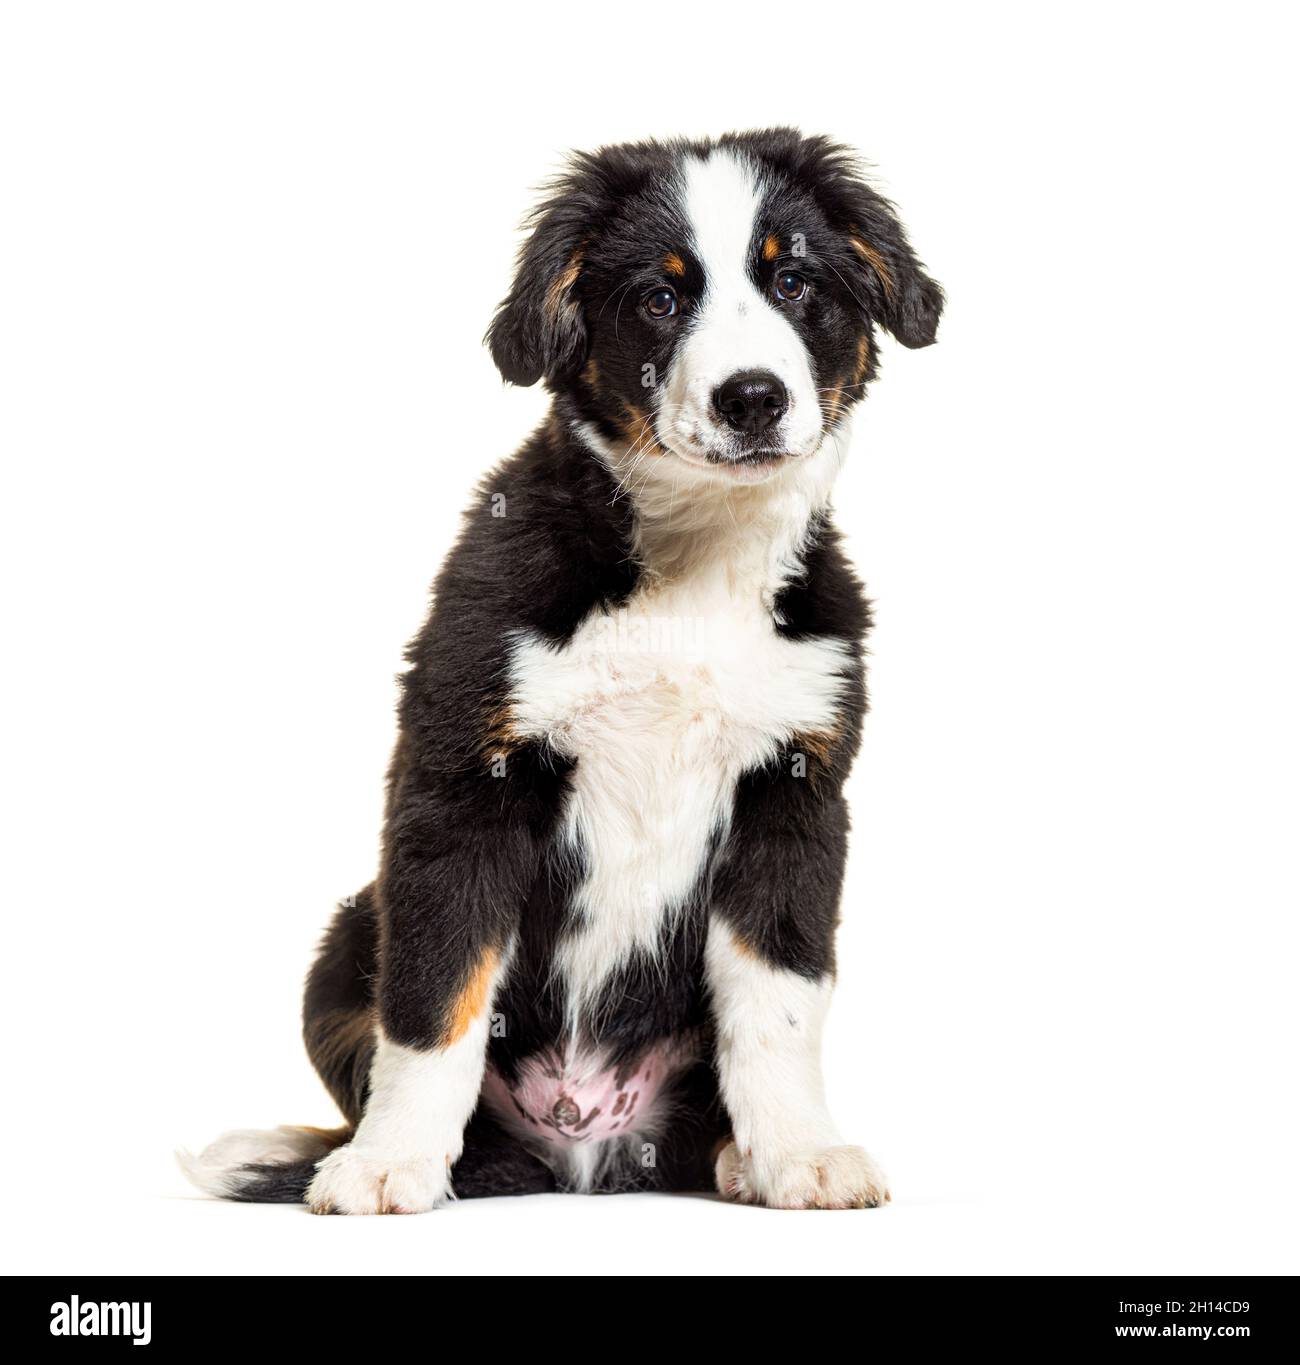 Welpe Bordernese Hund. Mixedbreed Border Collie und Berner Sennenhund; drei  Monate alt Stockfotografie - Alamy